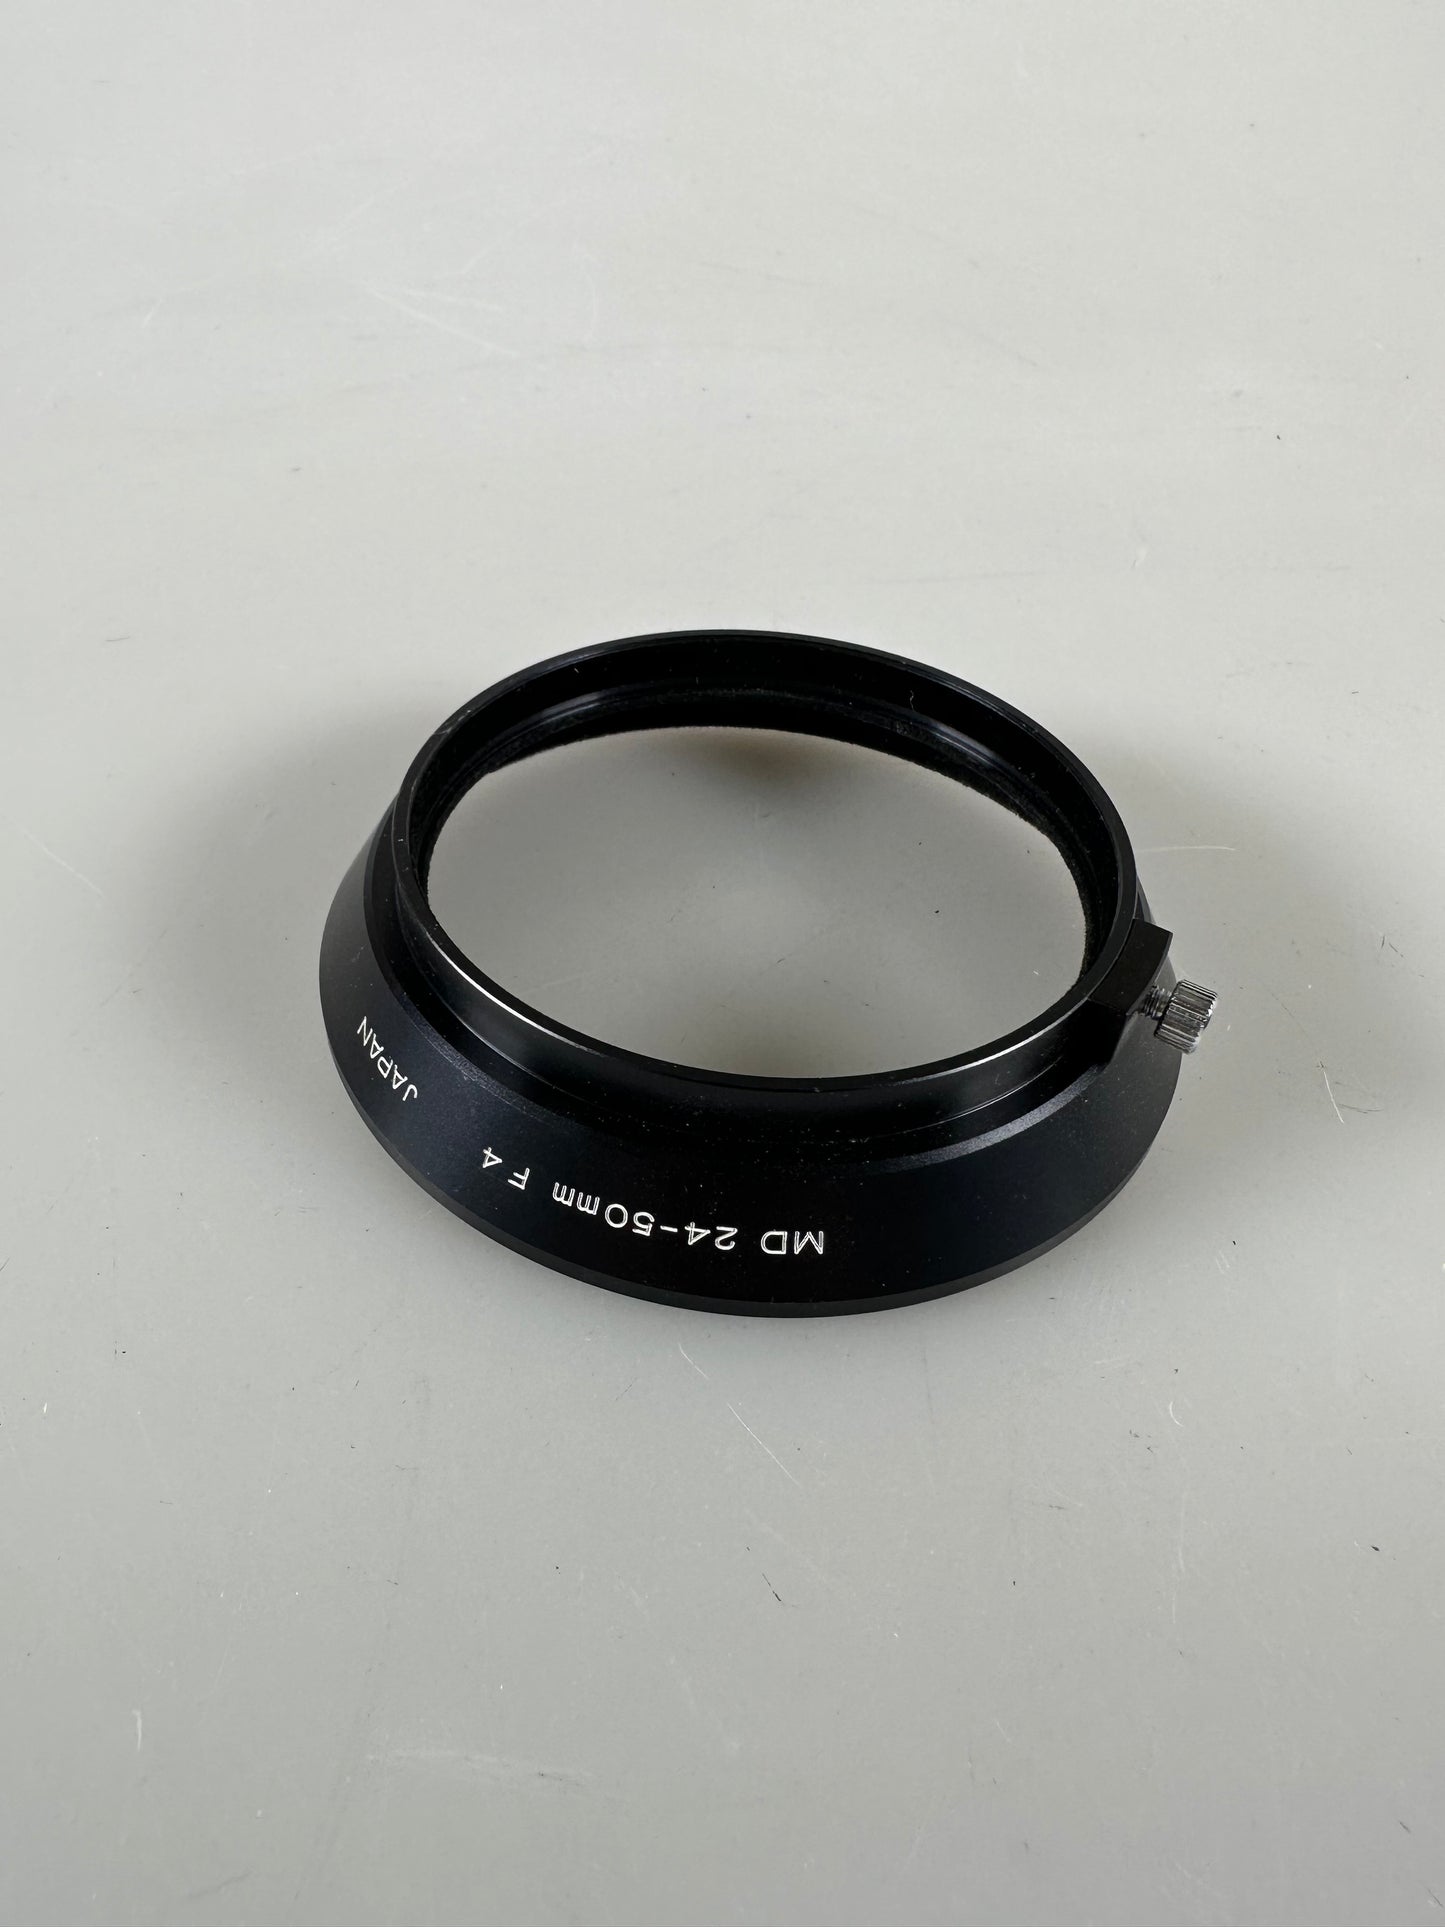 Minolta MD 24-50mm F4 lens hood RARE